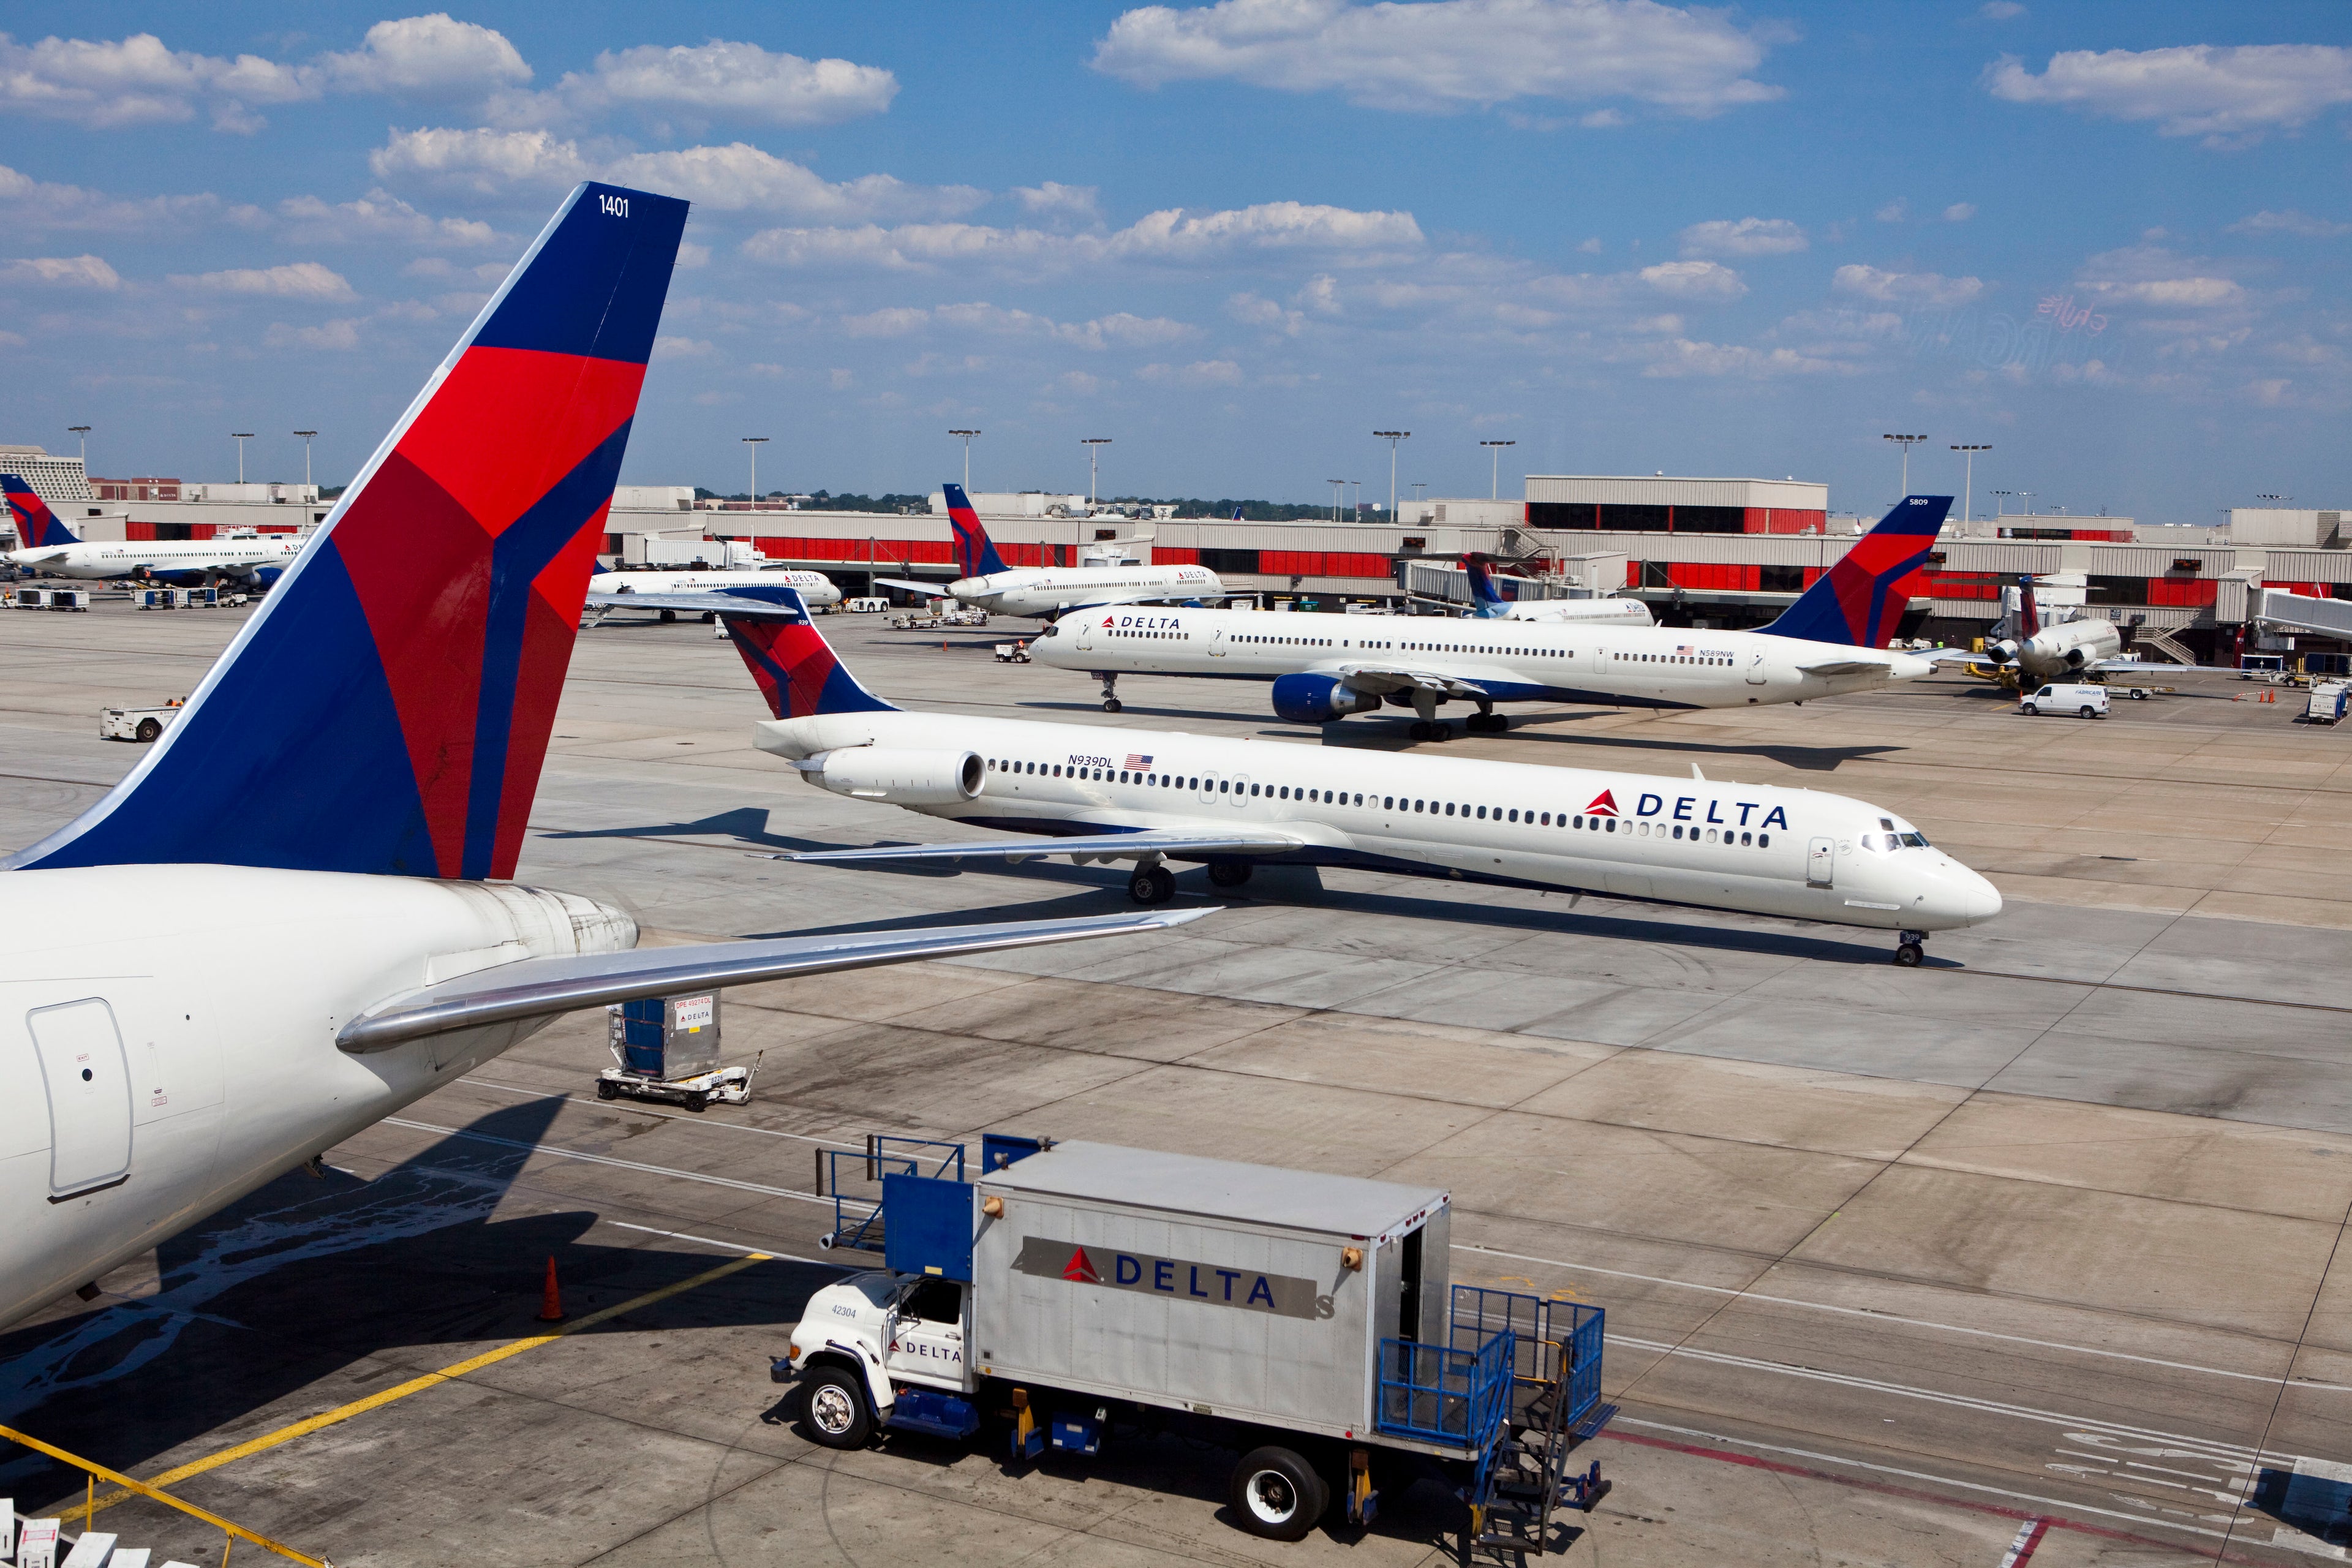 USA - Transportation - Delta Airlines Hub at Hartsfield-Jackson Atlanta International